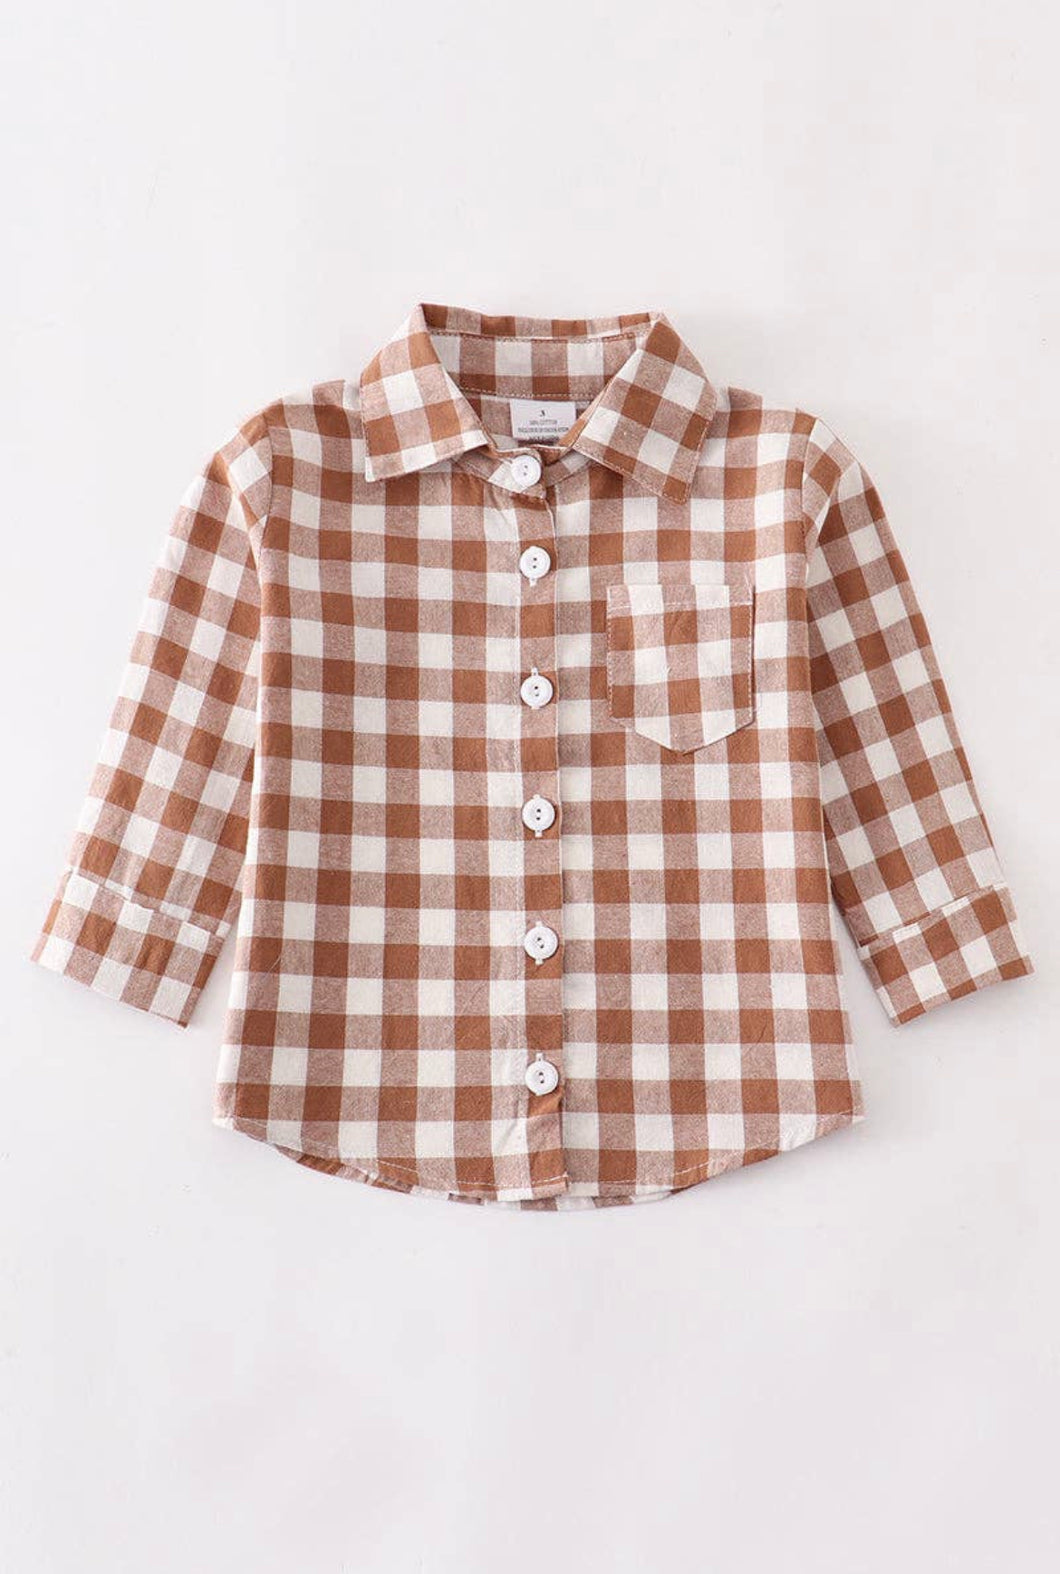 Boy's Brown Plaid Button Down Shirt